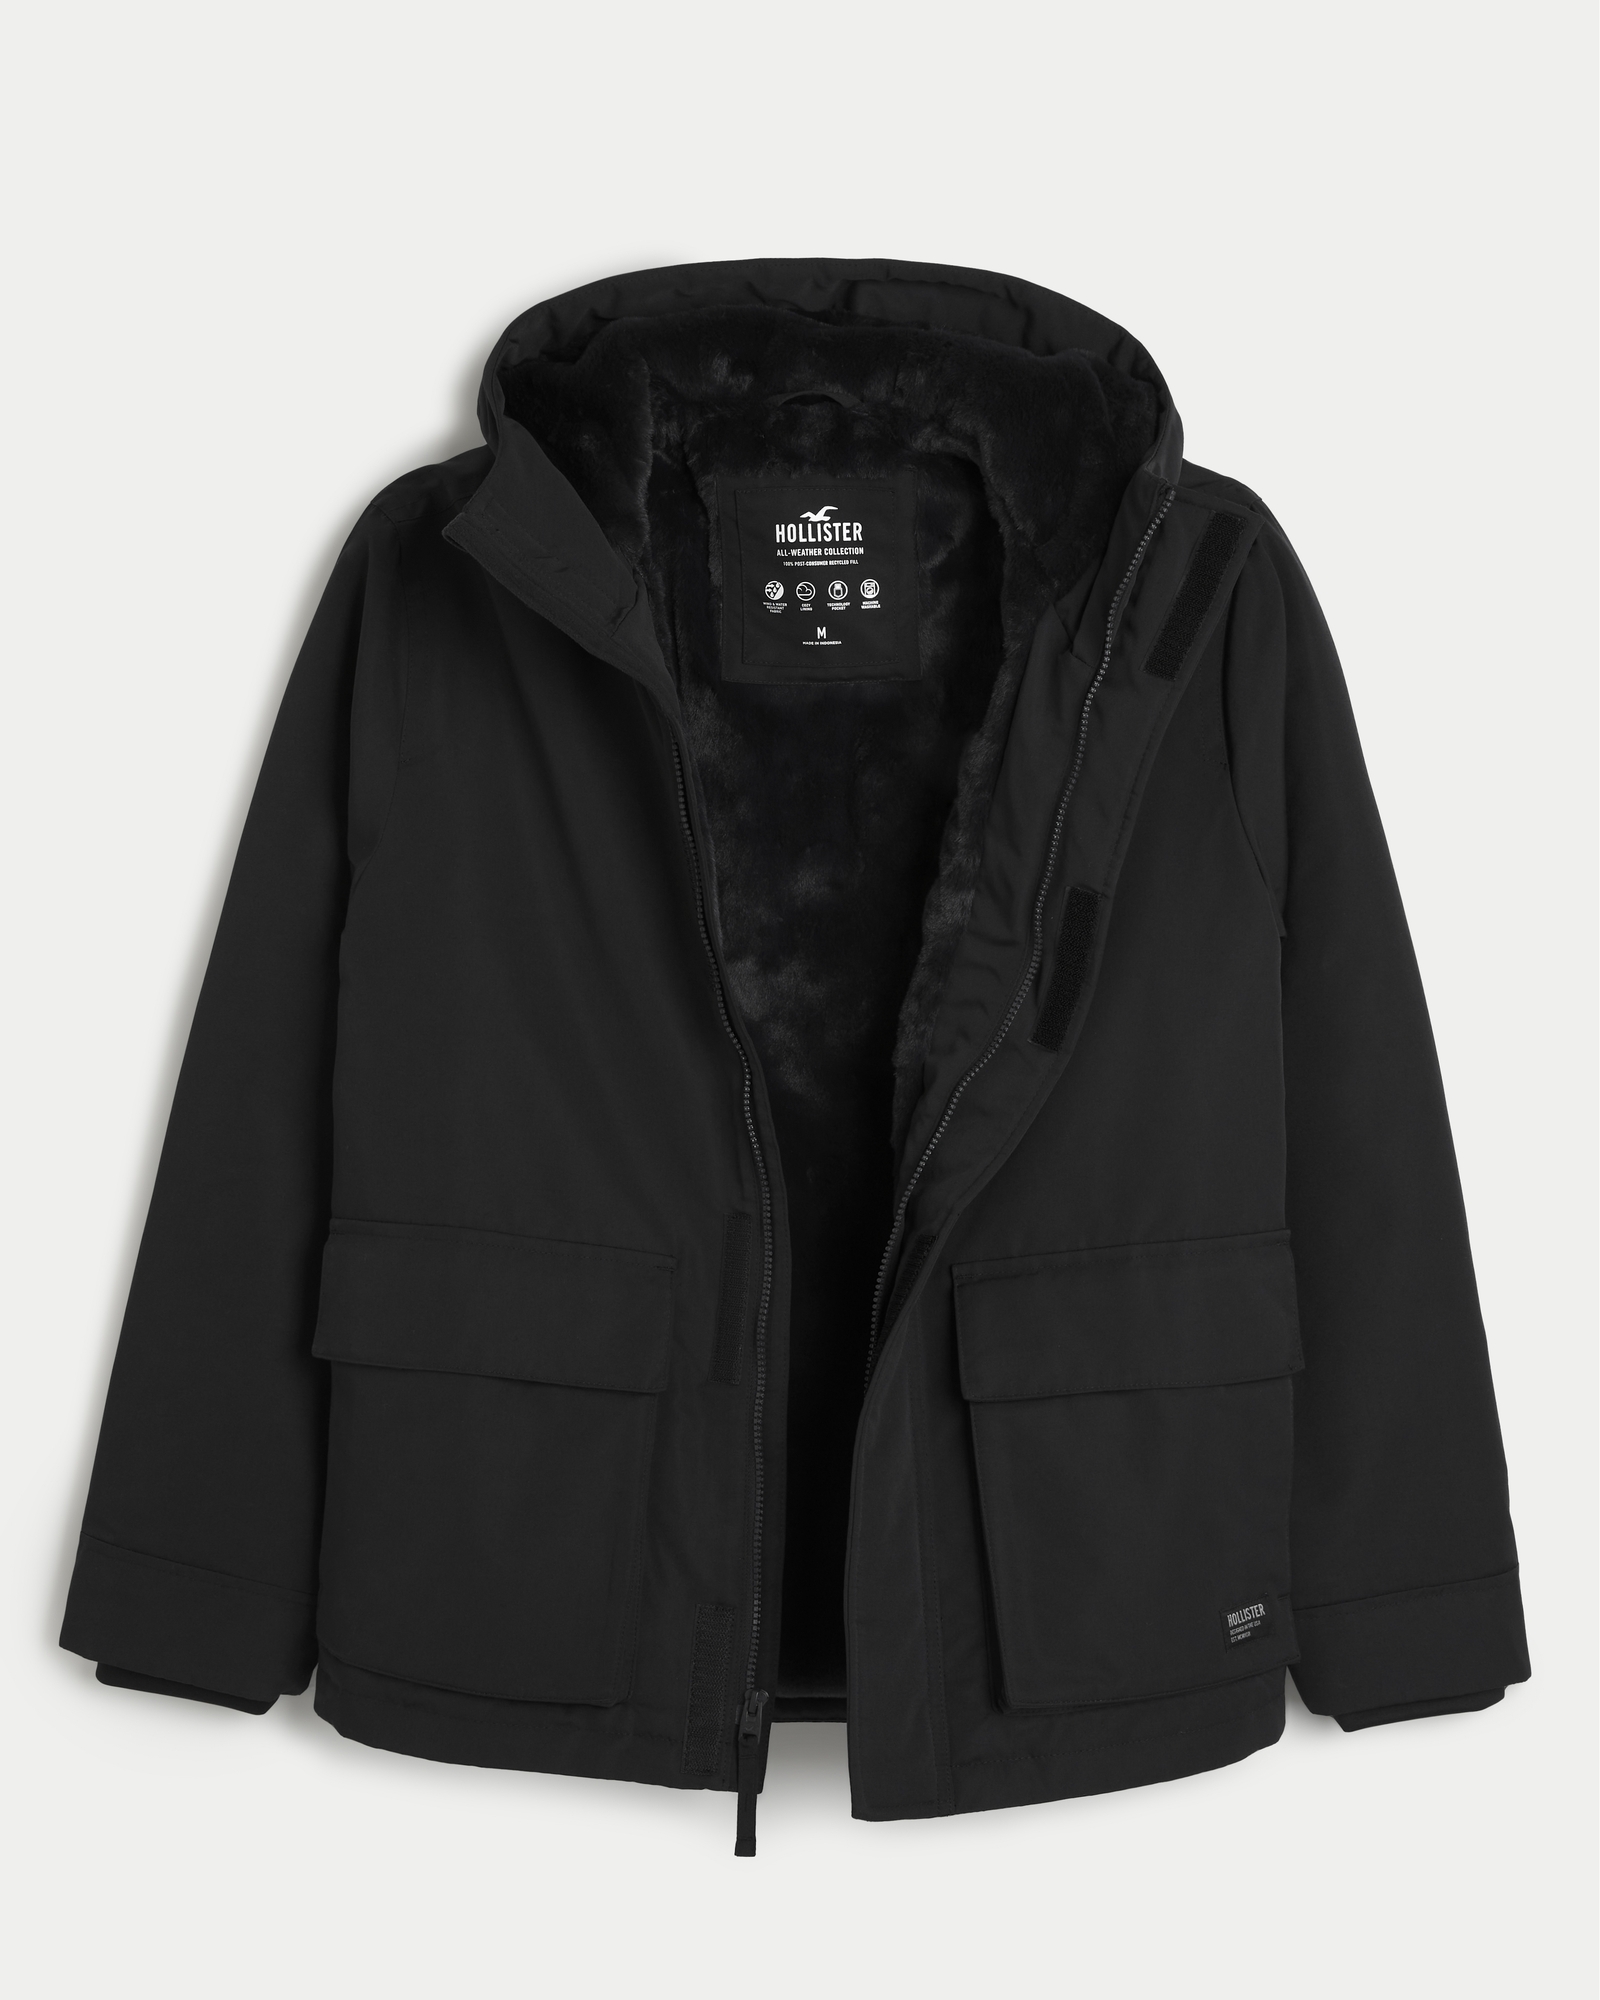 Men's All-Weather Winter Jacket, Men's Sale